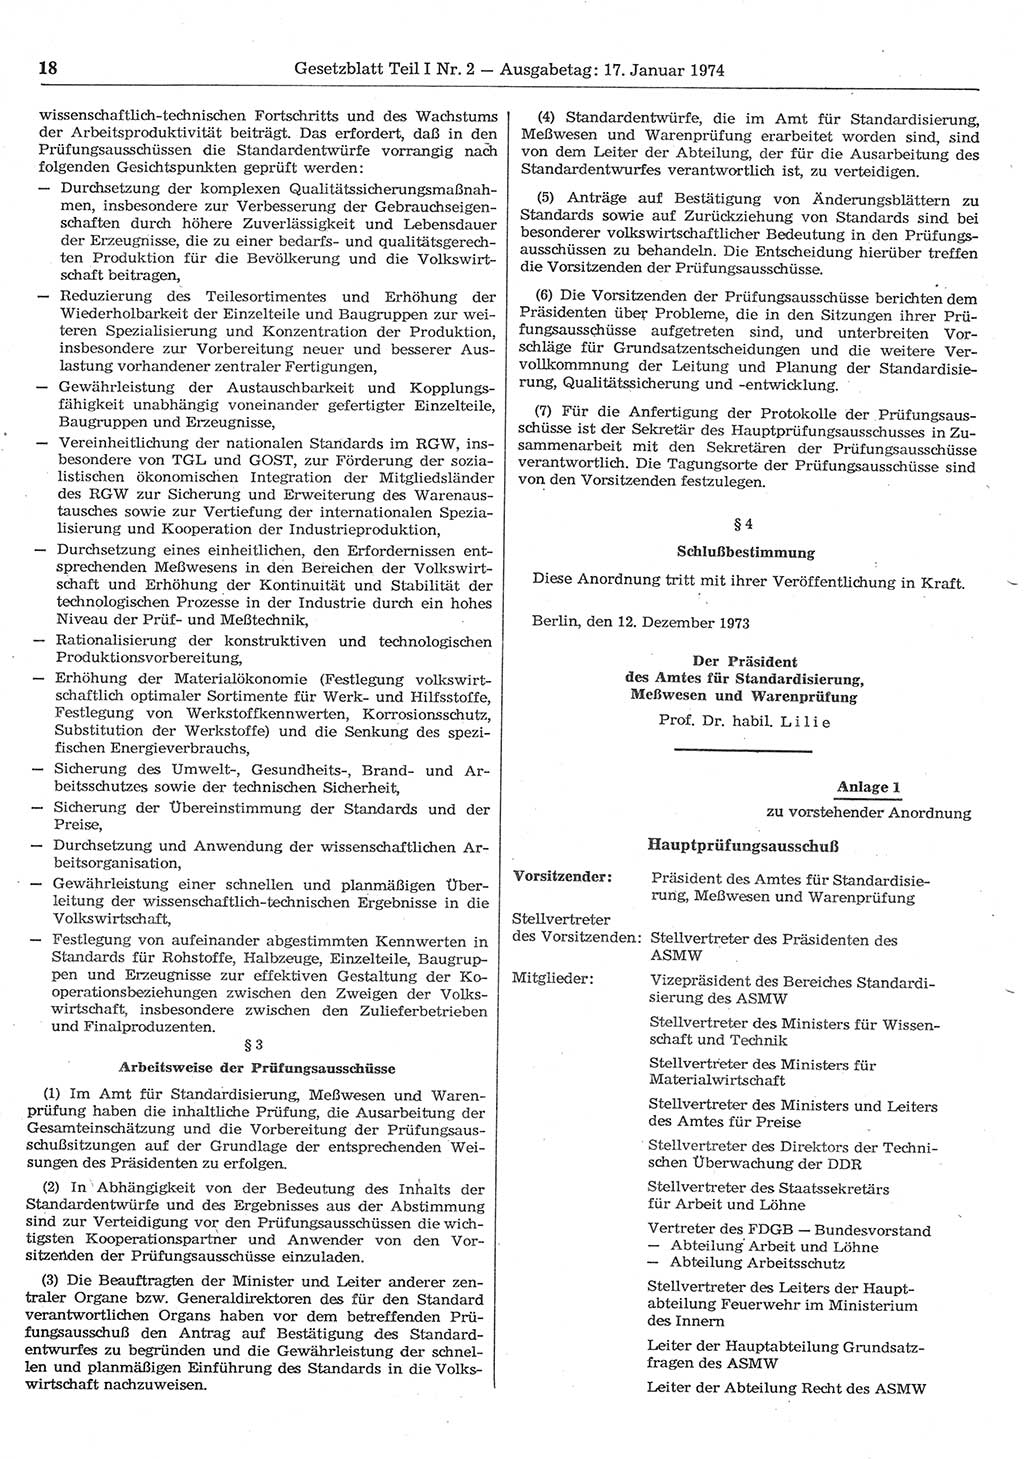 Gesetzblatt (GBl.) der Deutschen Demokratischen Republik (DDR) Teil Ⅰ 1974, Seite 18 (GBl. DDR Ⅰ 1974, S. 18)